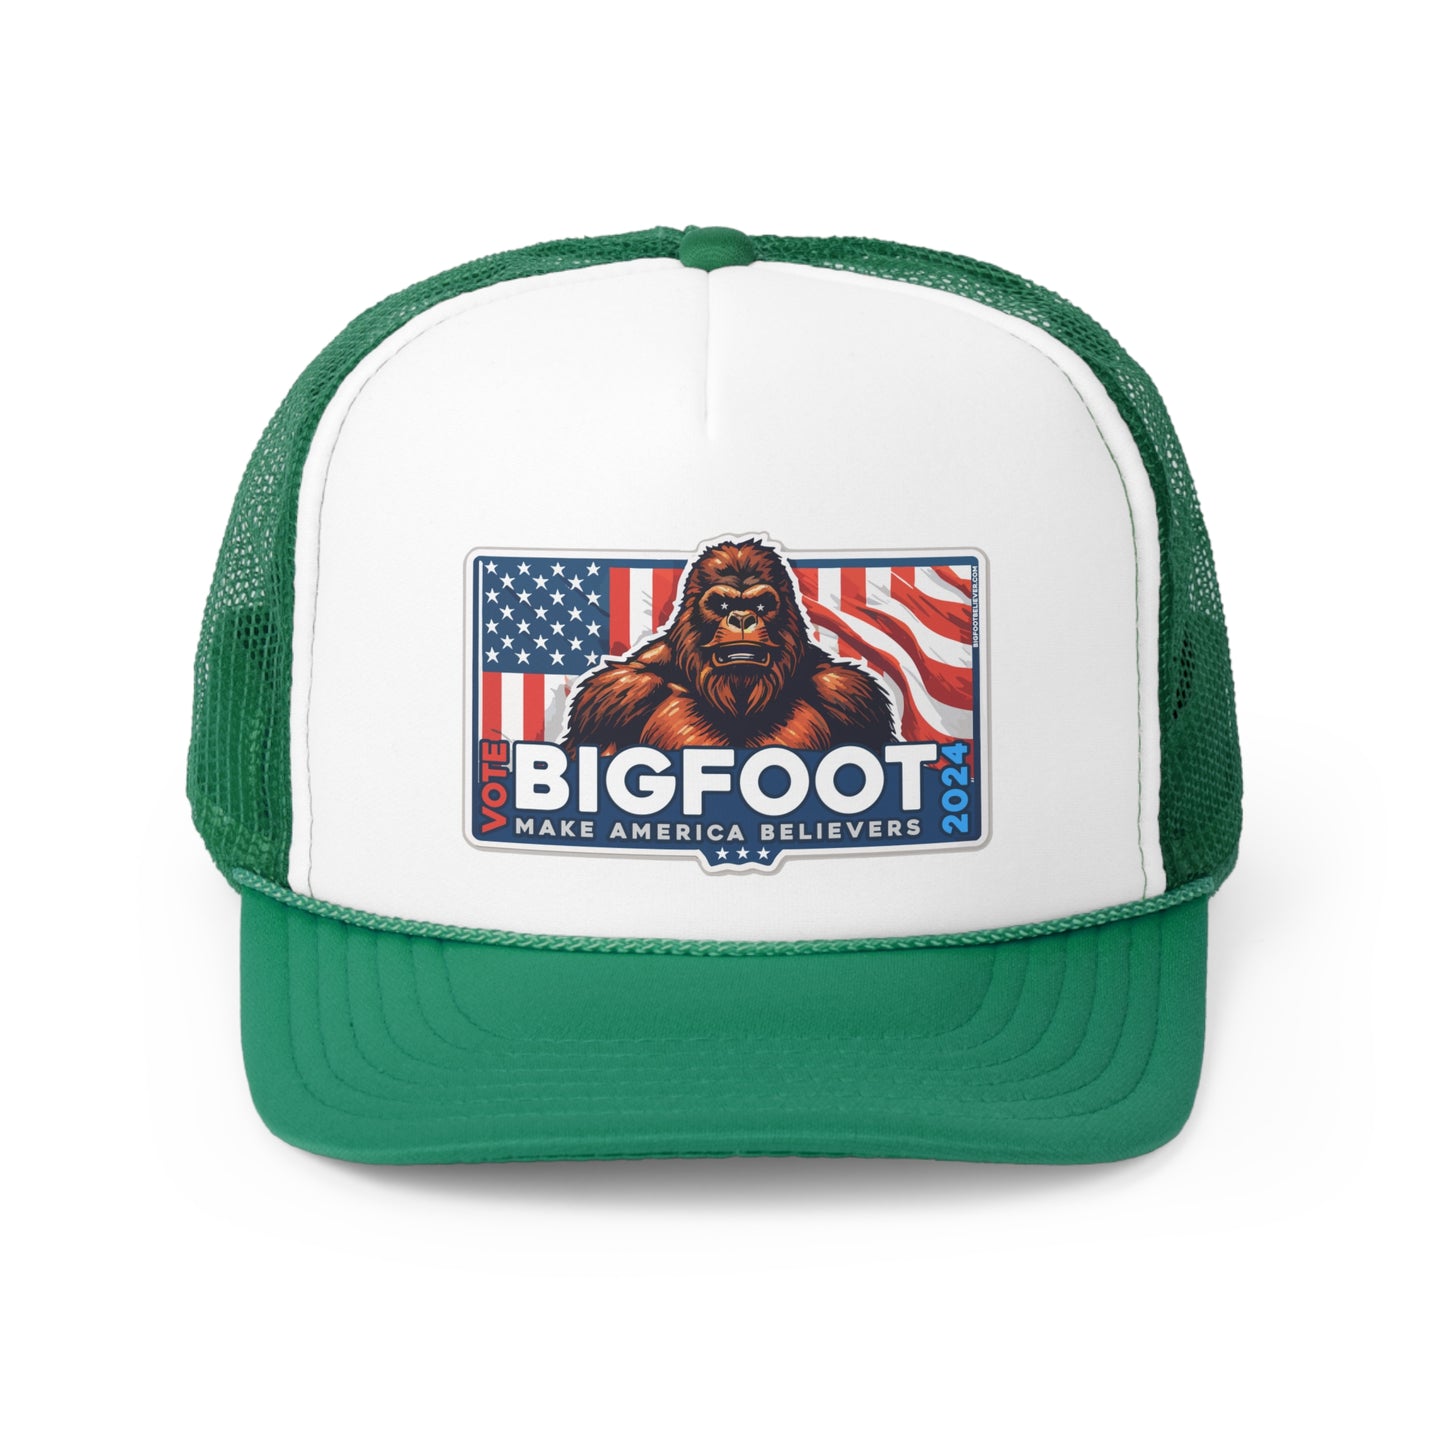 Bigfoot for President 2024 Trucker Caps